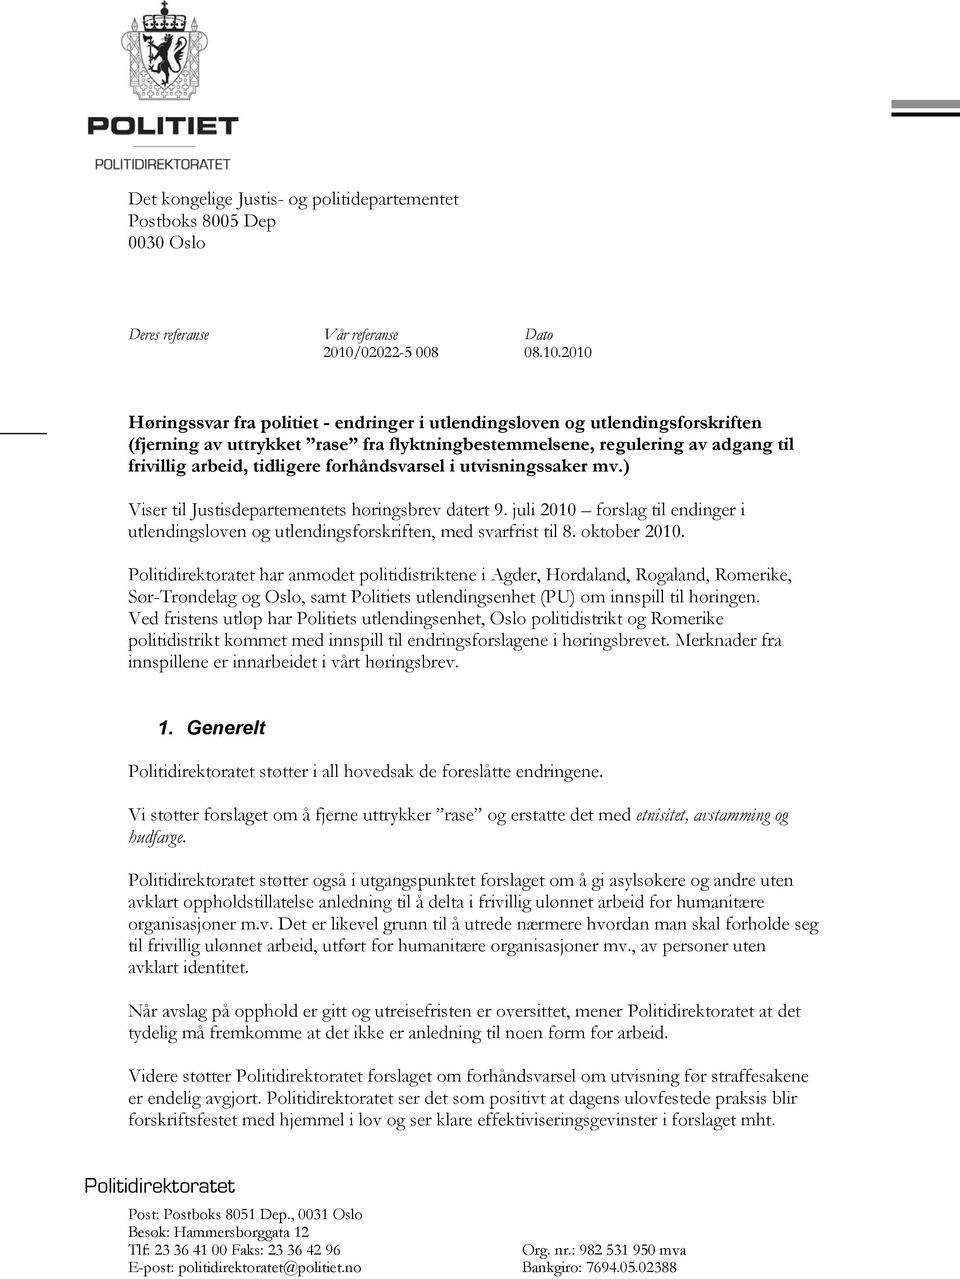 2010 Høringssvar fra politiet - endringer i utlendingsloven og utlendingsforskriften (fjerning av uttrykket rase fra flyktningbestemmelsene, regulering av adgang til frivillig arbeid, tidligere